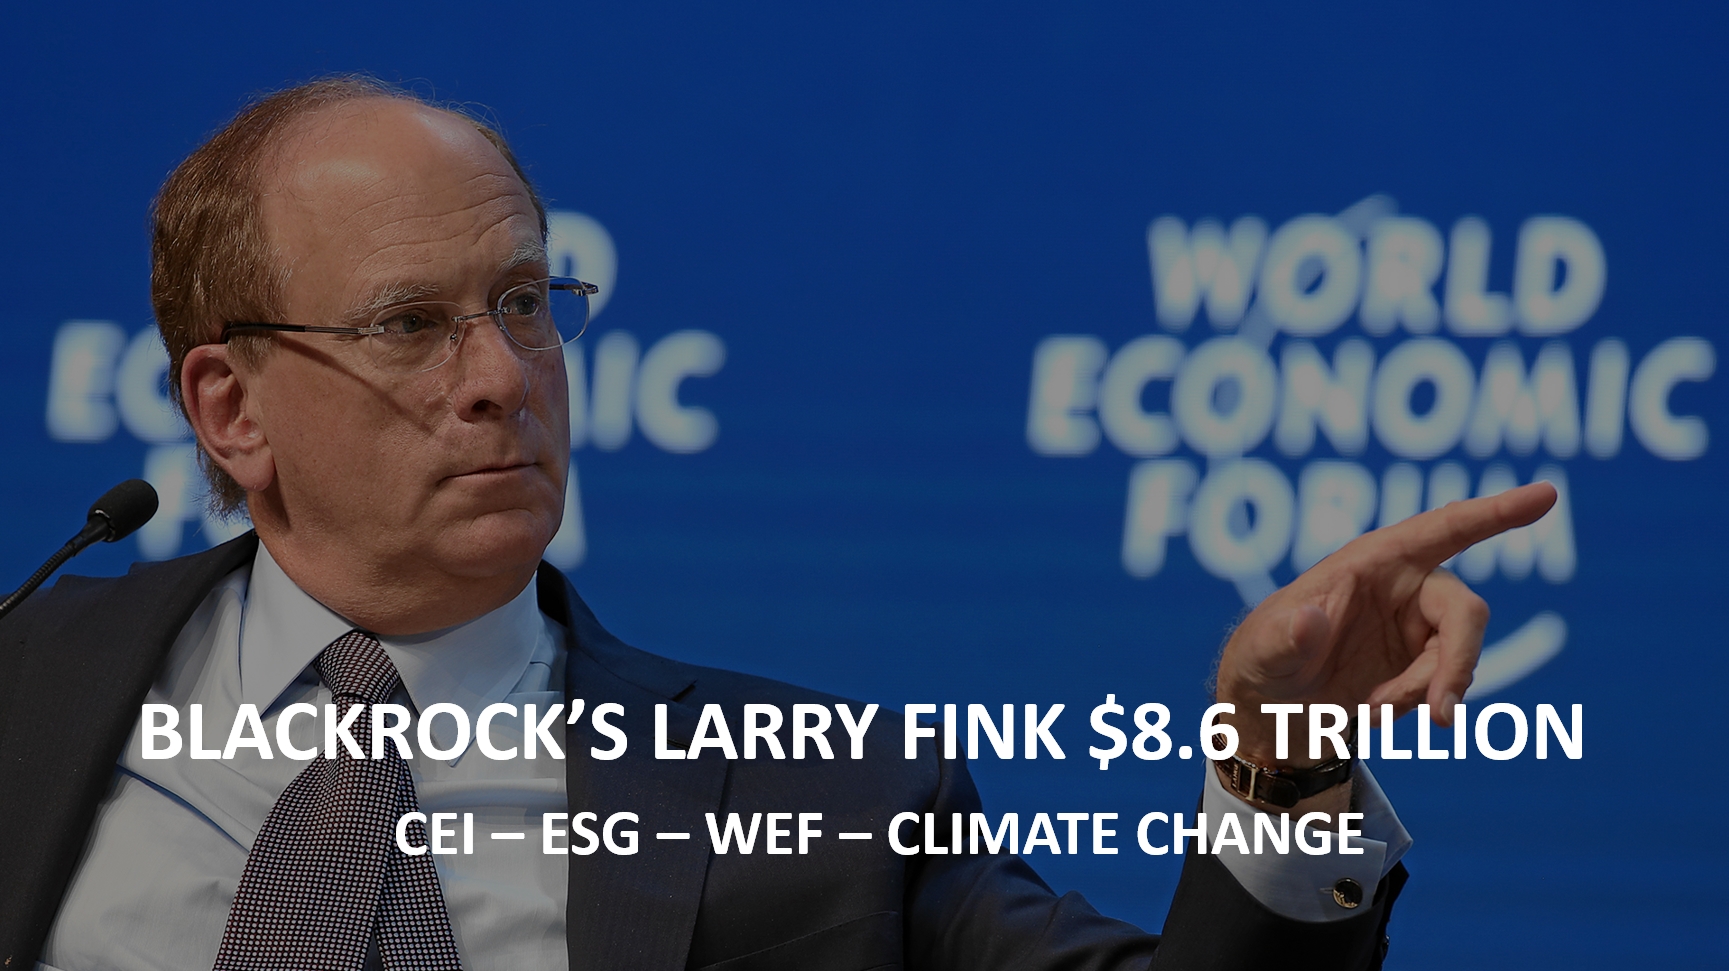 BlackRock-CEO-Larry-Fink-CEI- ESG - WEF- Climate Change- Igor-Beuker-Marketing-Keynote-Speaker